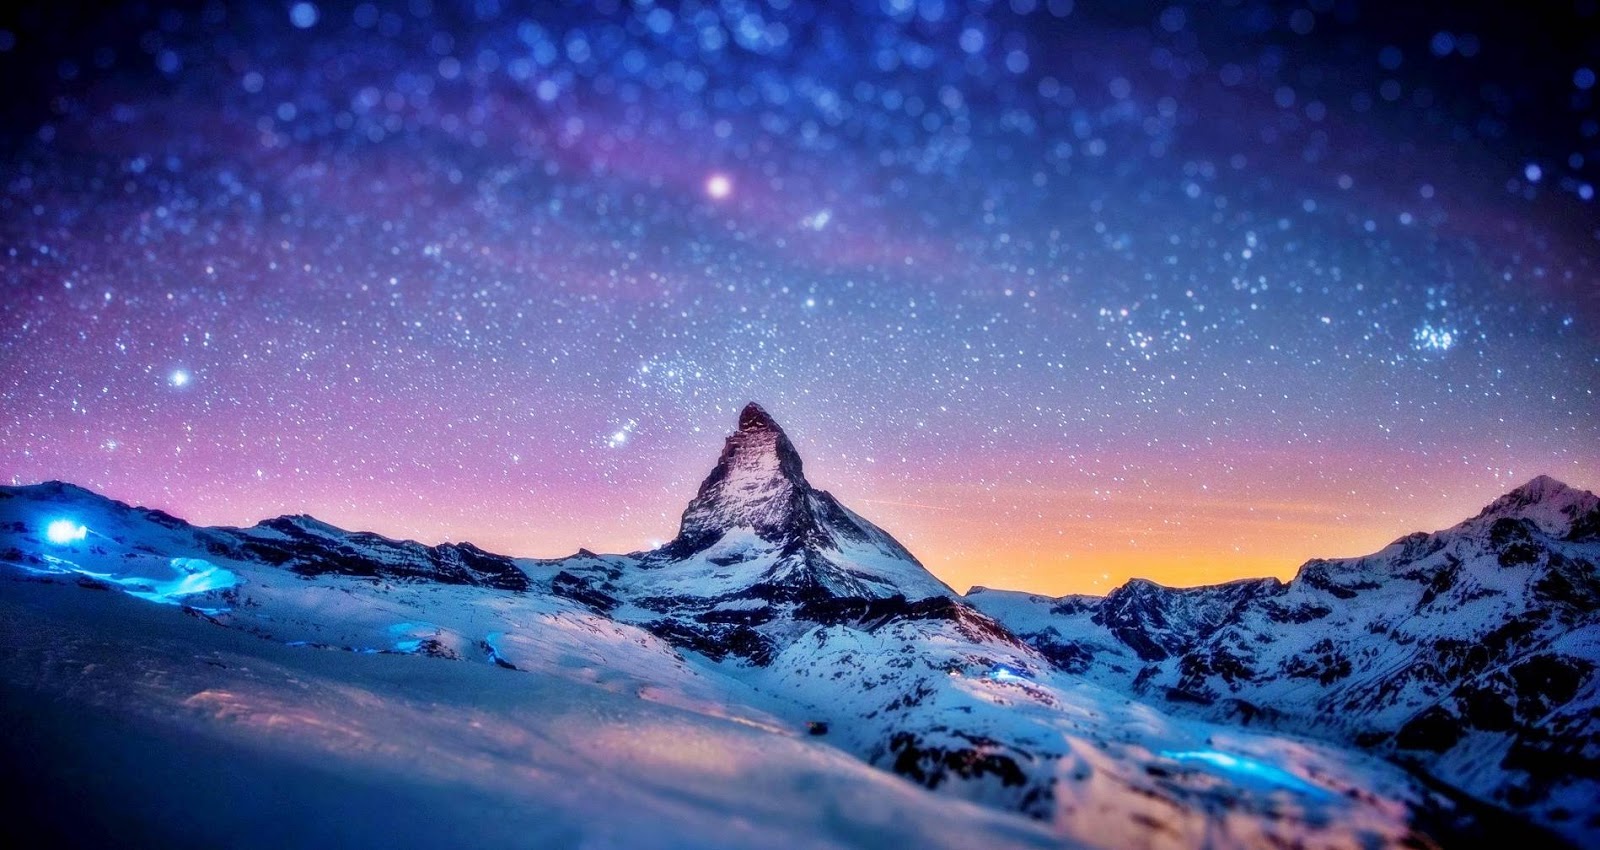 Snow Mountain in night 1600x850